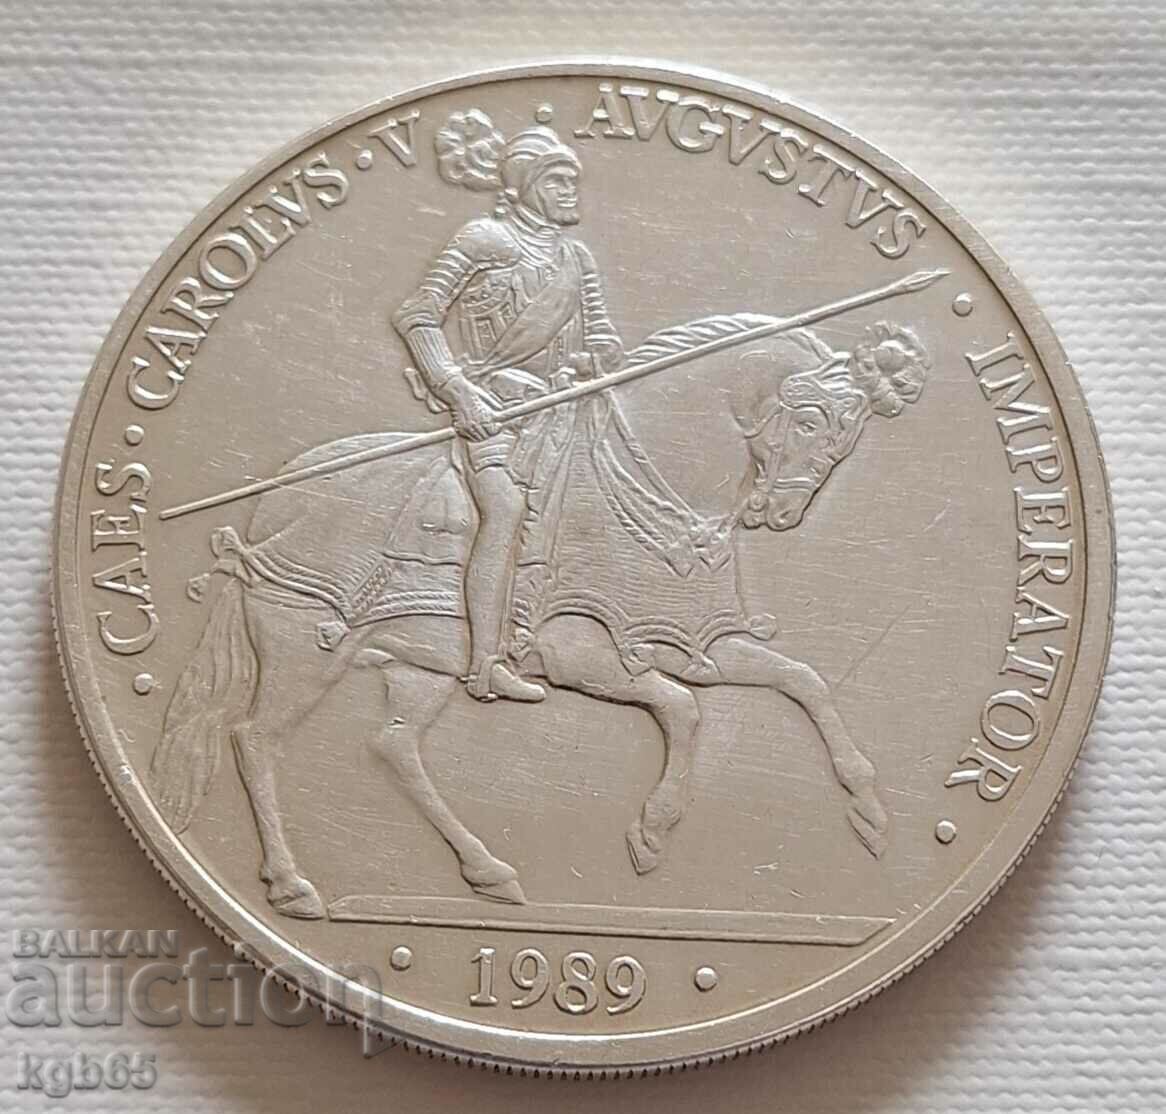 5 екю сребро 1989 г. Испания. Ж-1